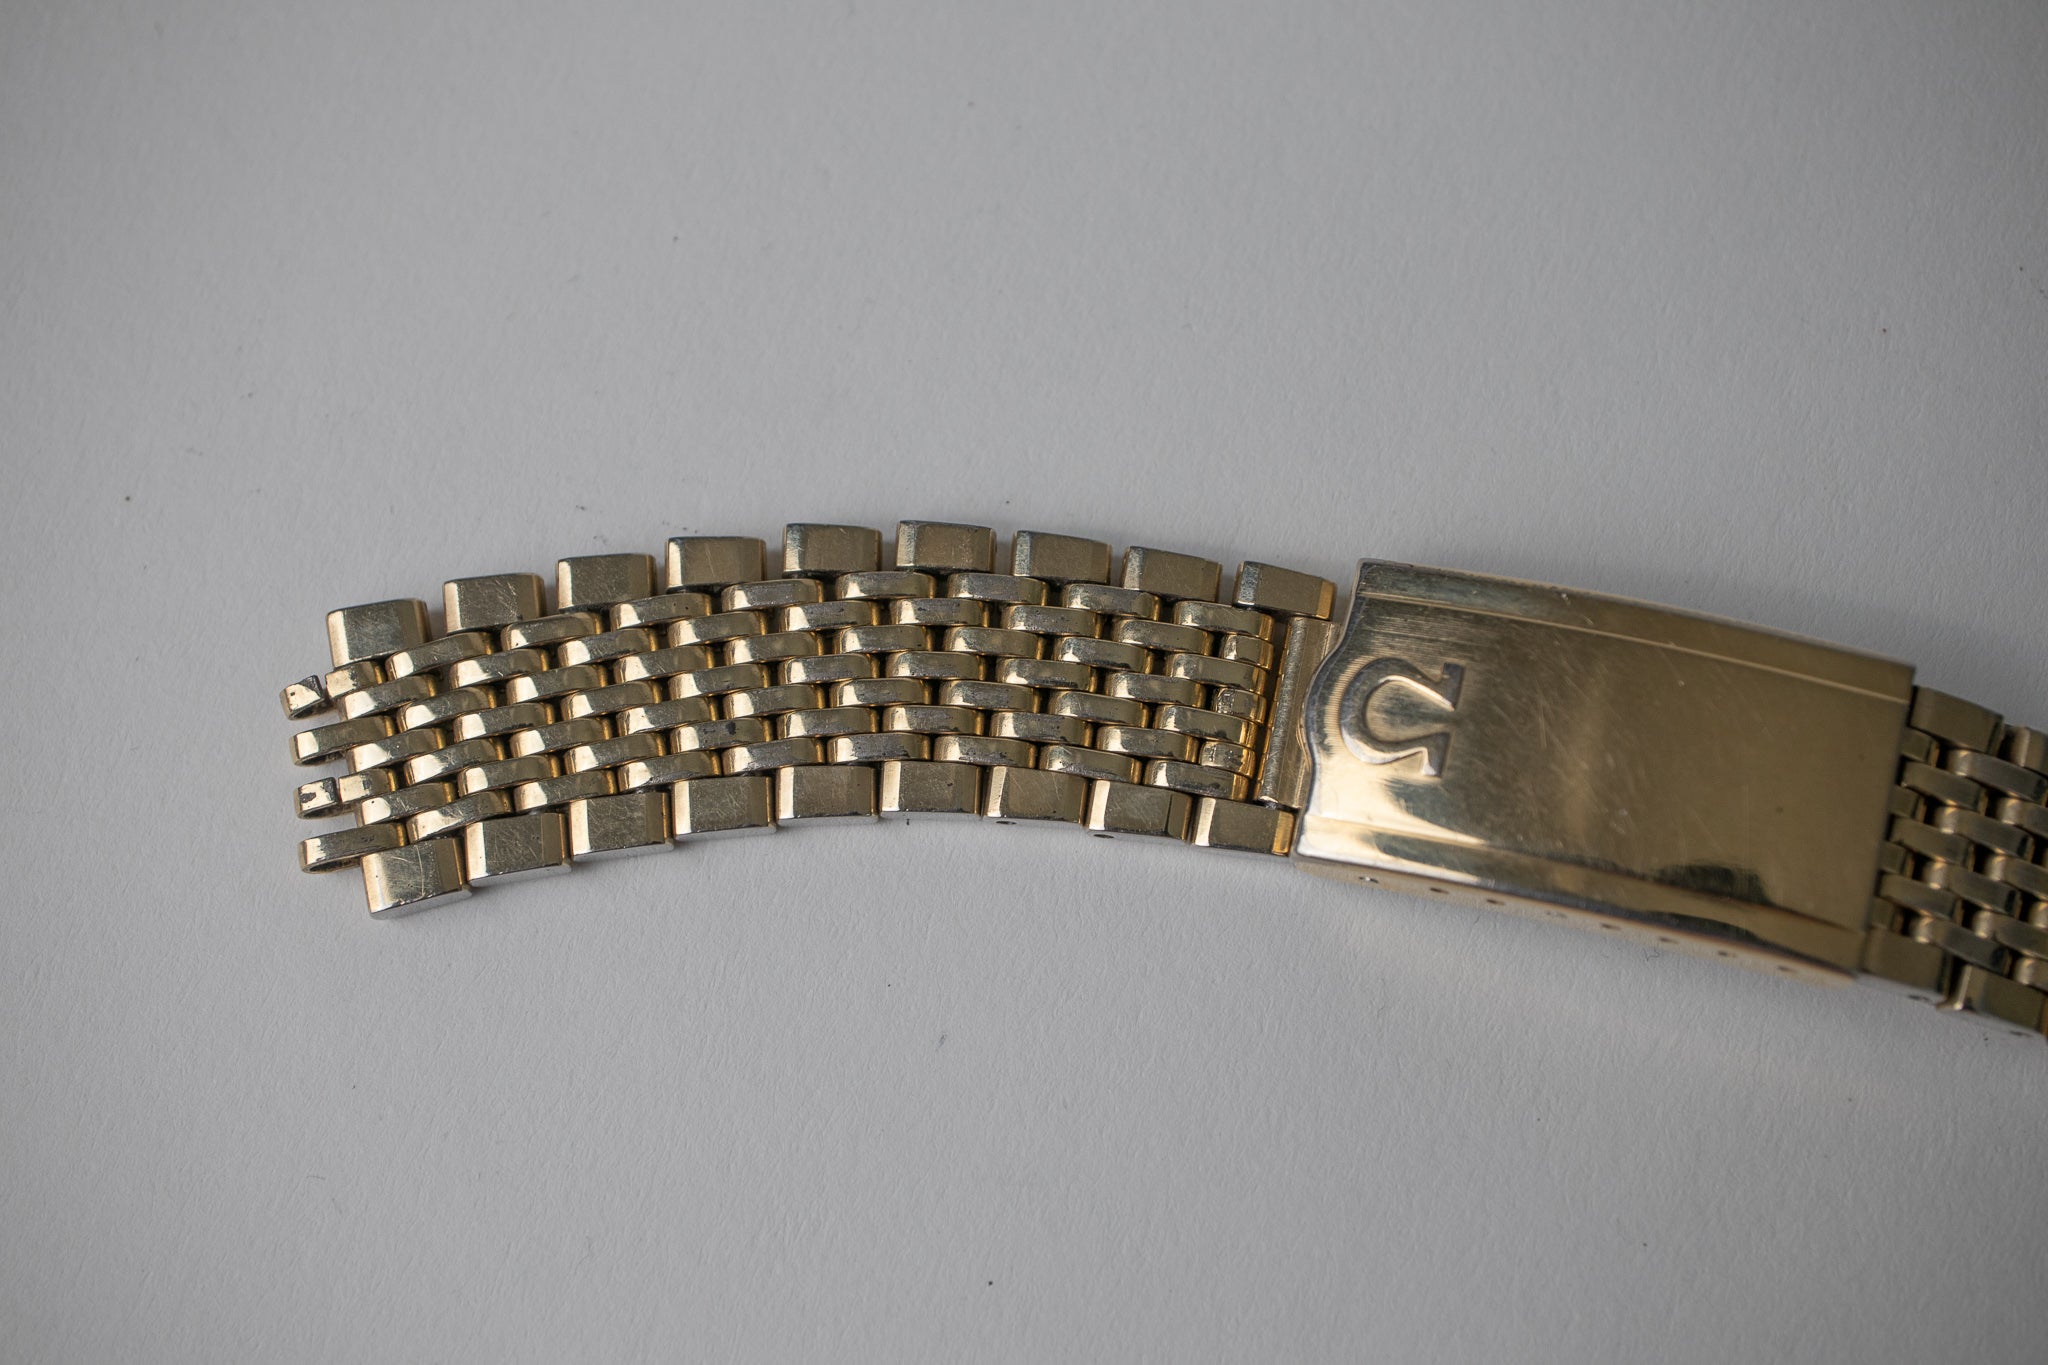 Omega 14KT Gold Filled Beads of Rice Bracelet 18mm 70 Endlinks